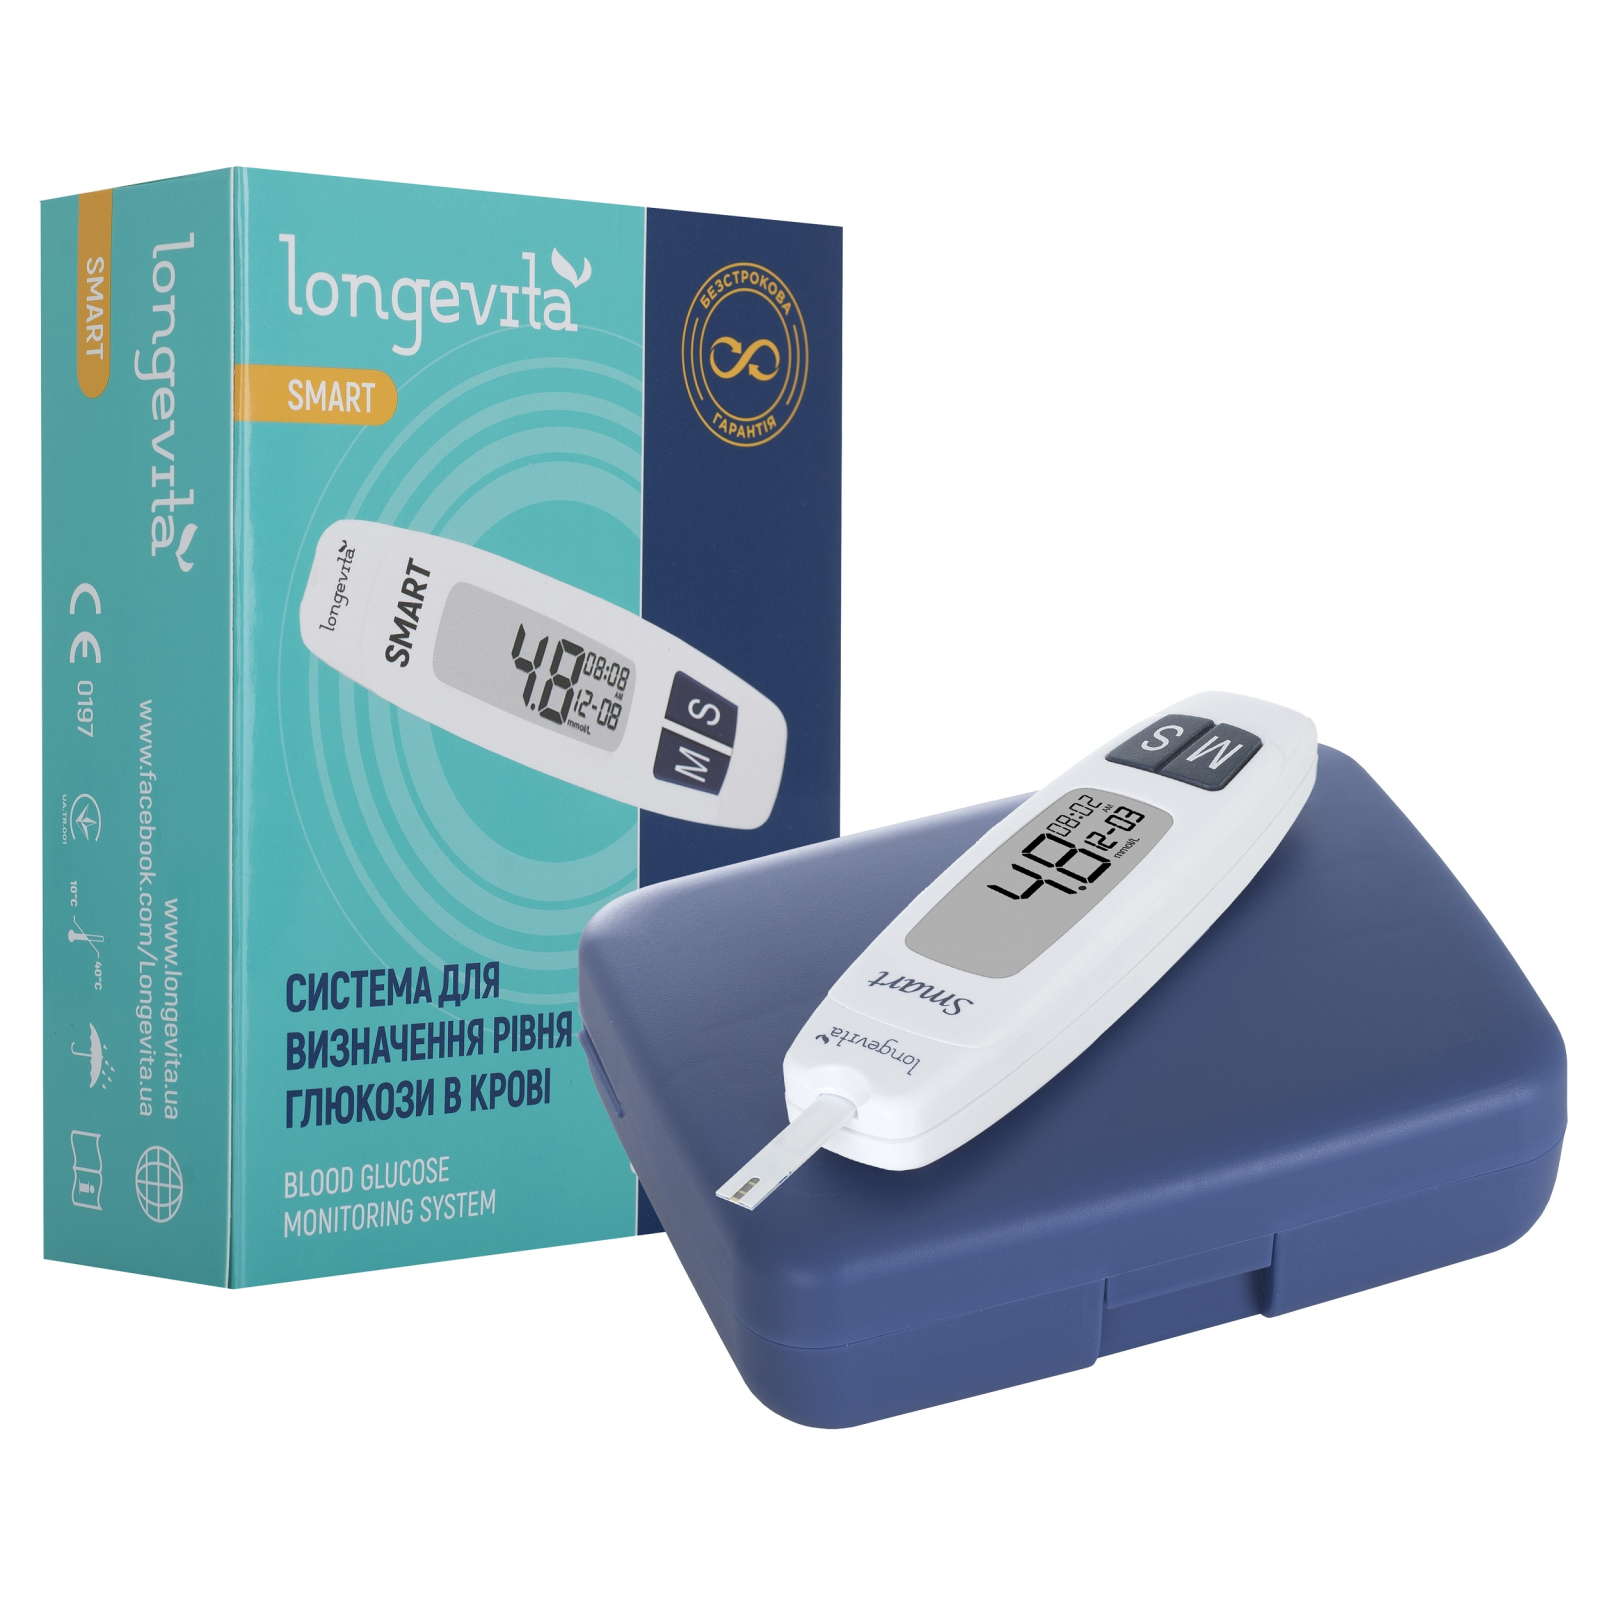 Глюкометр Longevita Smart Система для определения уровня глюкозы в крови (6397645) изображение 2